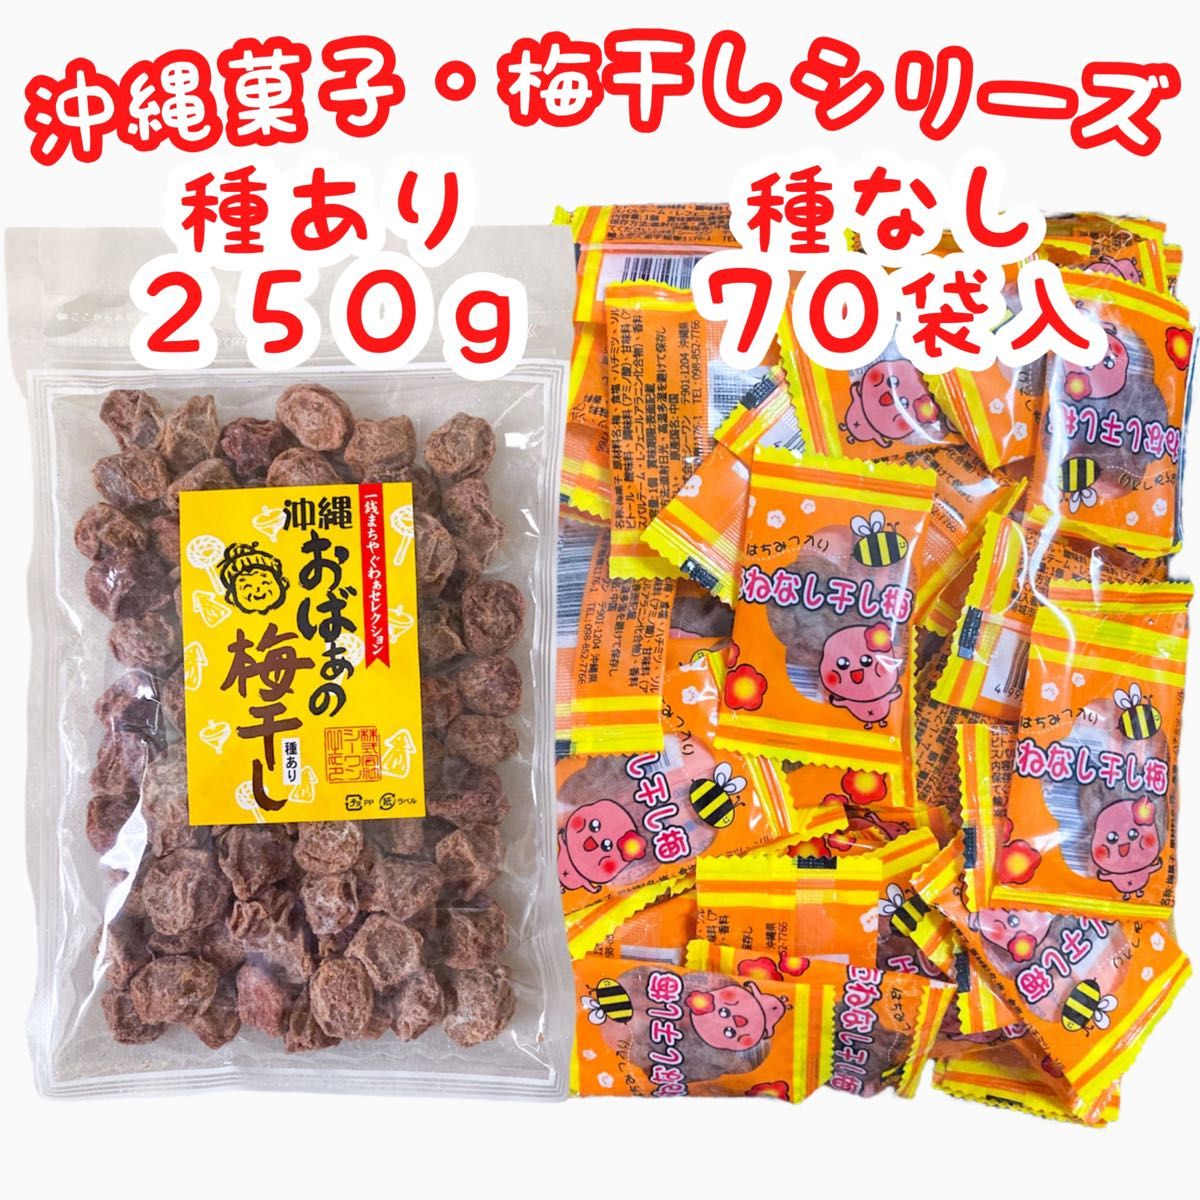 ◆人気商品◆沖縄梅菓子・おばぁの梅干し(種あり)＆たねなし干し梅(種なし) 大好評 大容量 特価セール SALE おやつ 駄菓子